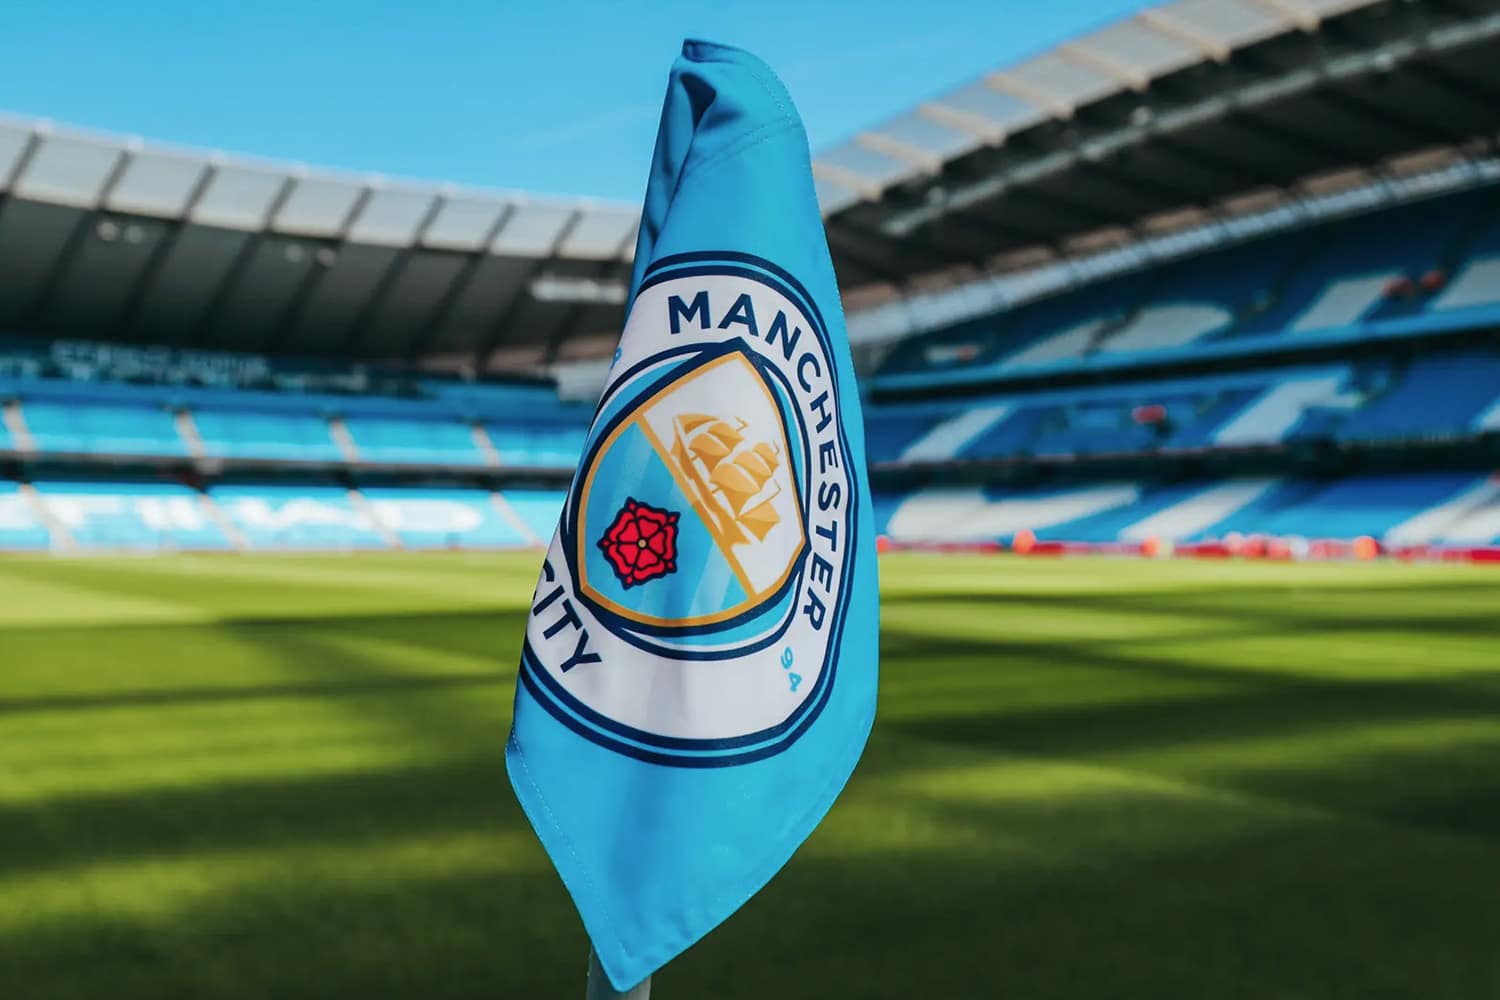 Manchester City FC corner flag in the Etihad Stadium